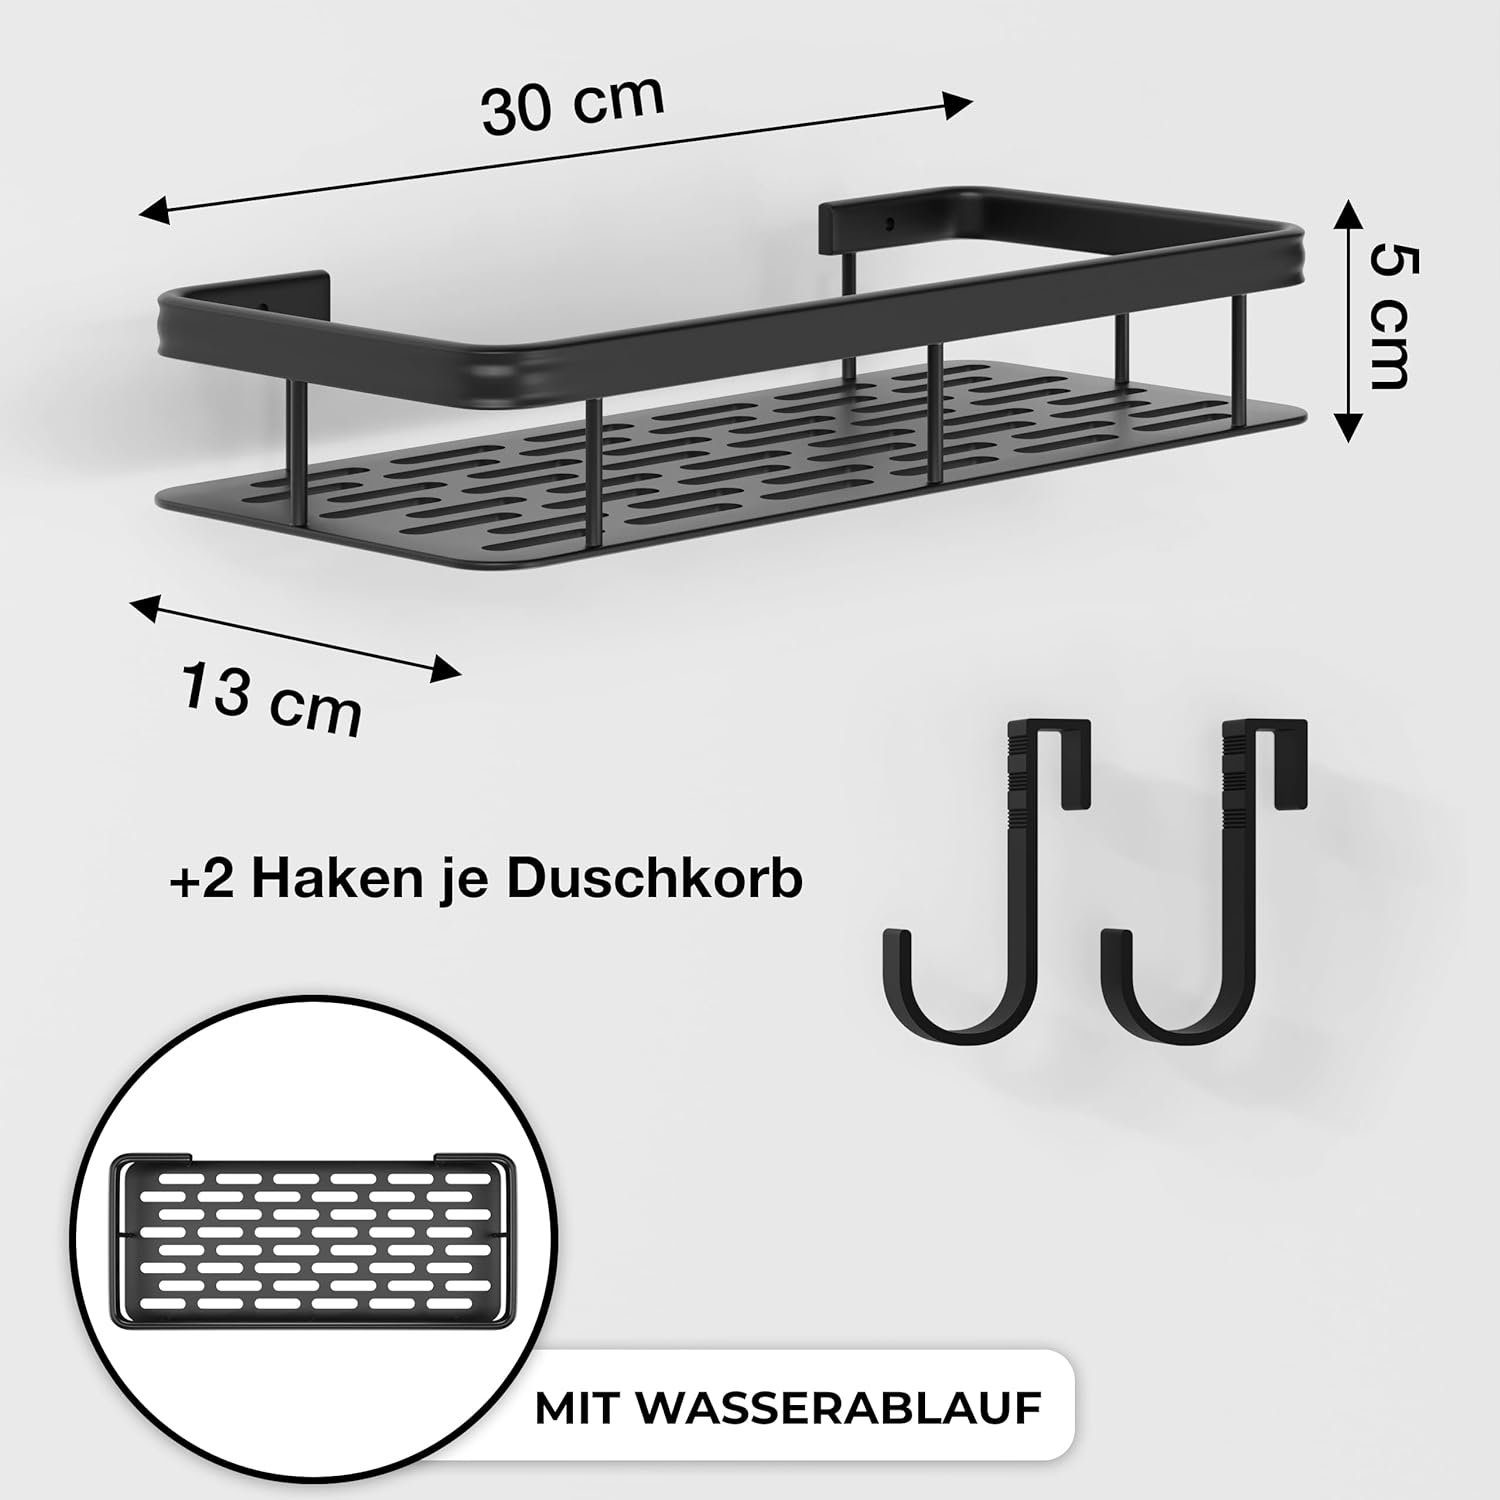 LIEBHEIM Duschablage Duschkorb Badregal ohne - Industrie Klebeband Bohren Schwarz 1-tlg. - Aluminium